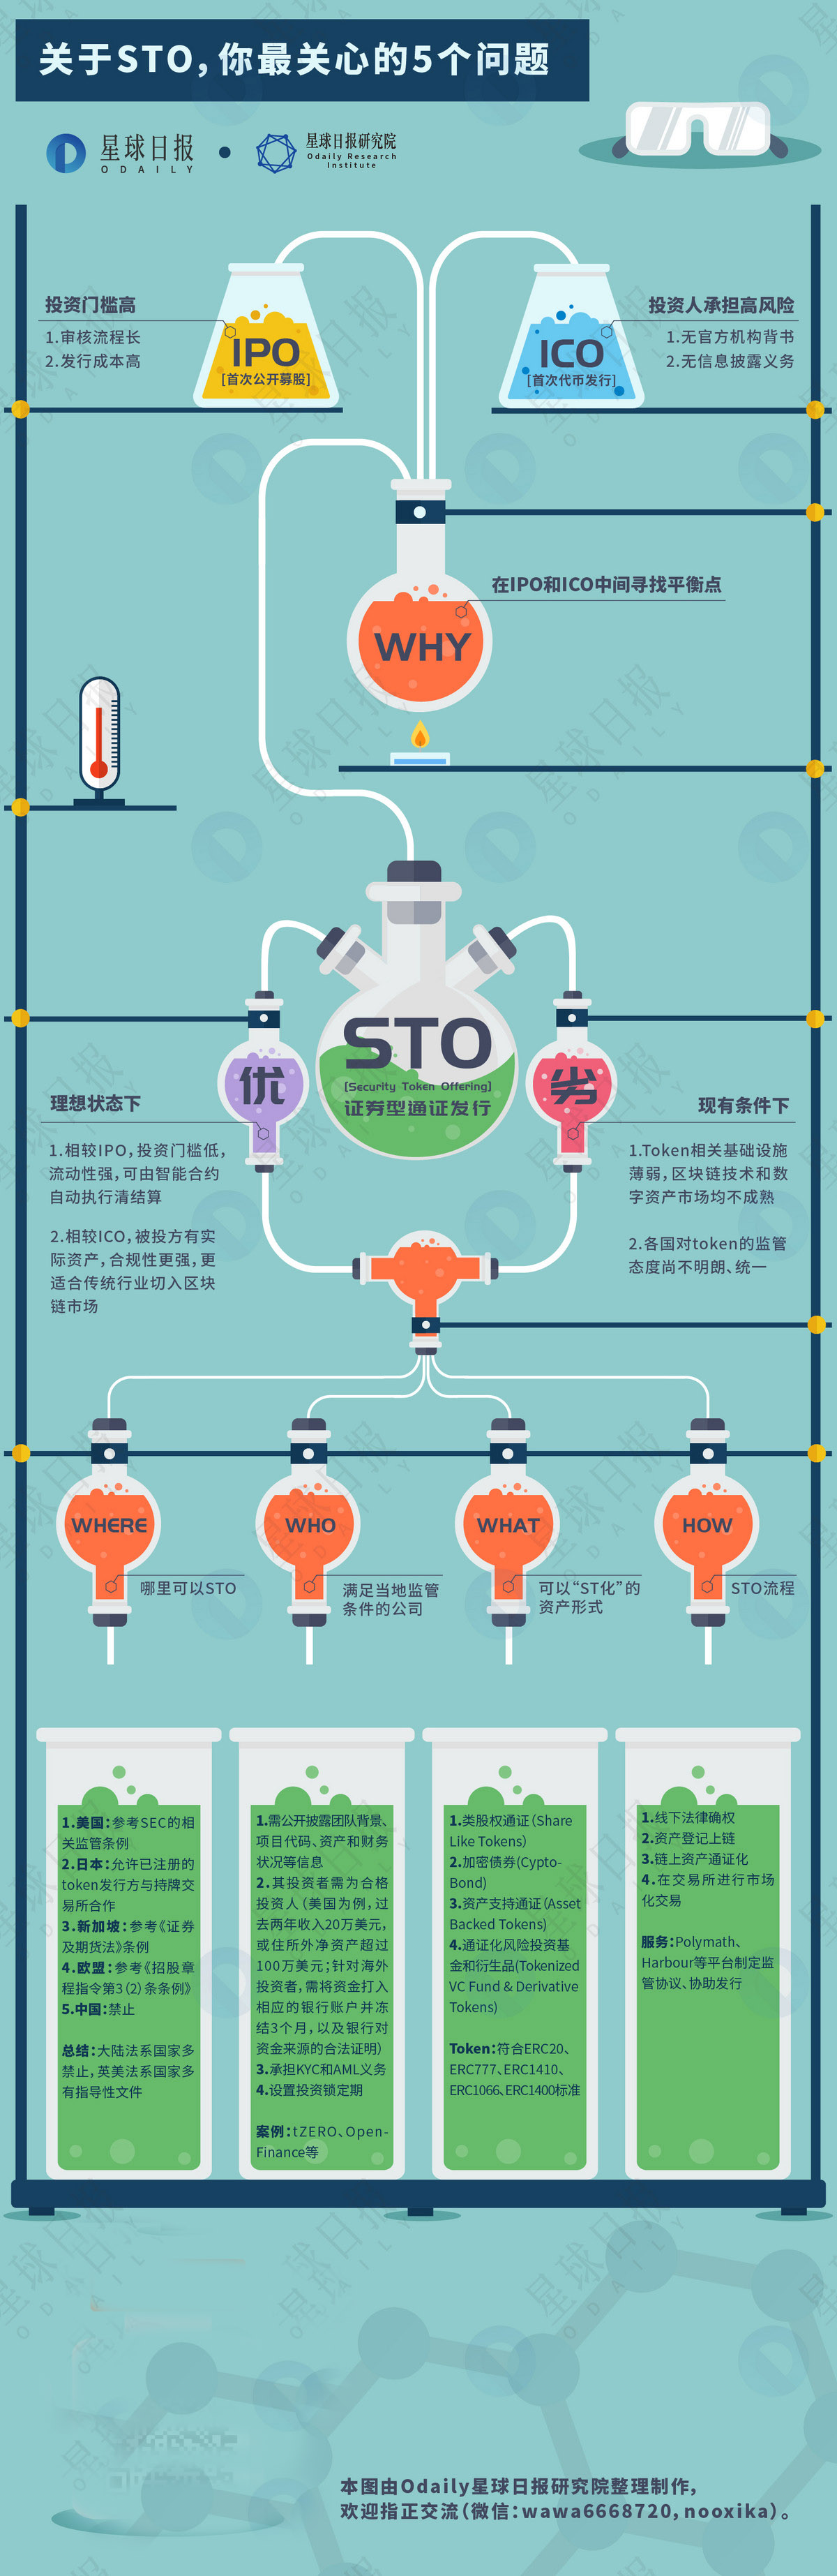 关于STO的五个问题都在这张图里配图(1)